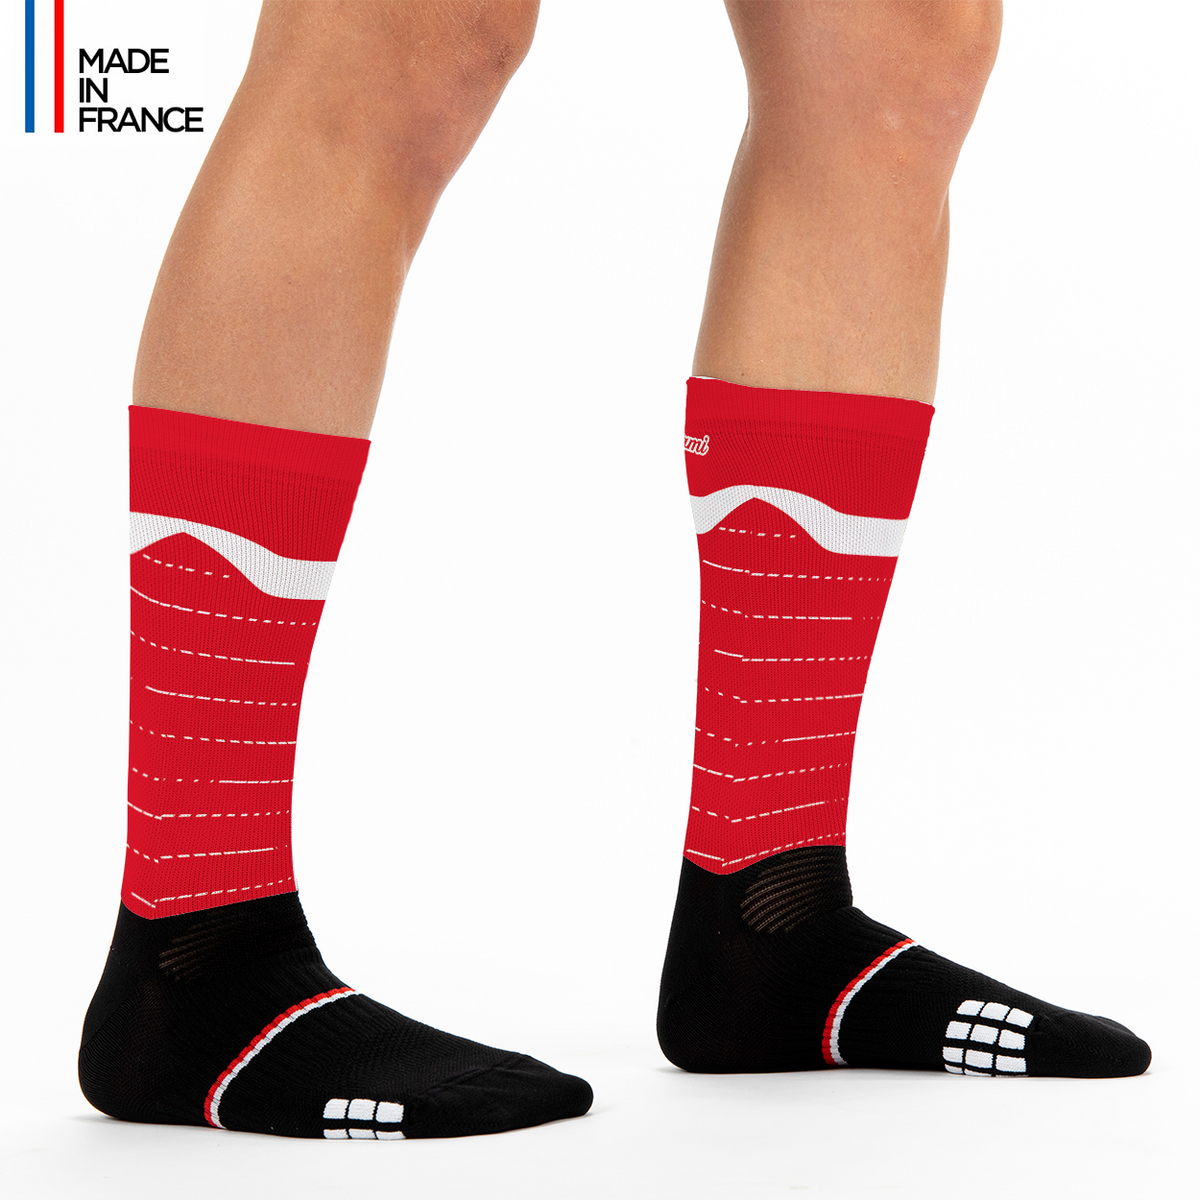 CH-Suisse-running-socks-switzerland-black white -chaussettes-suisse